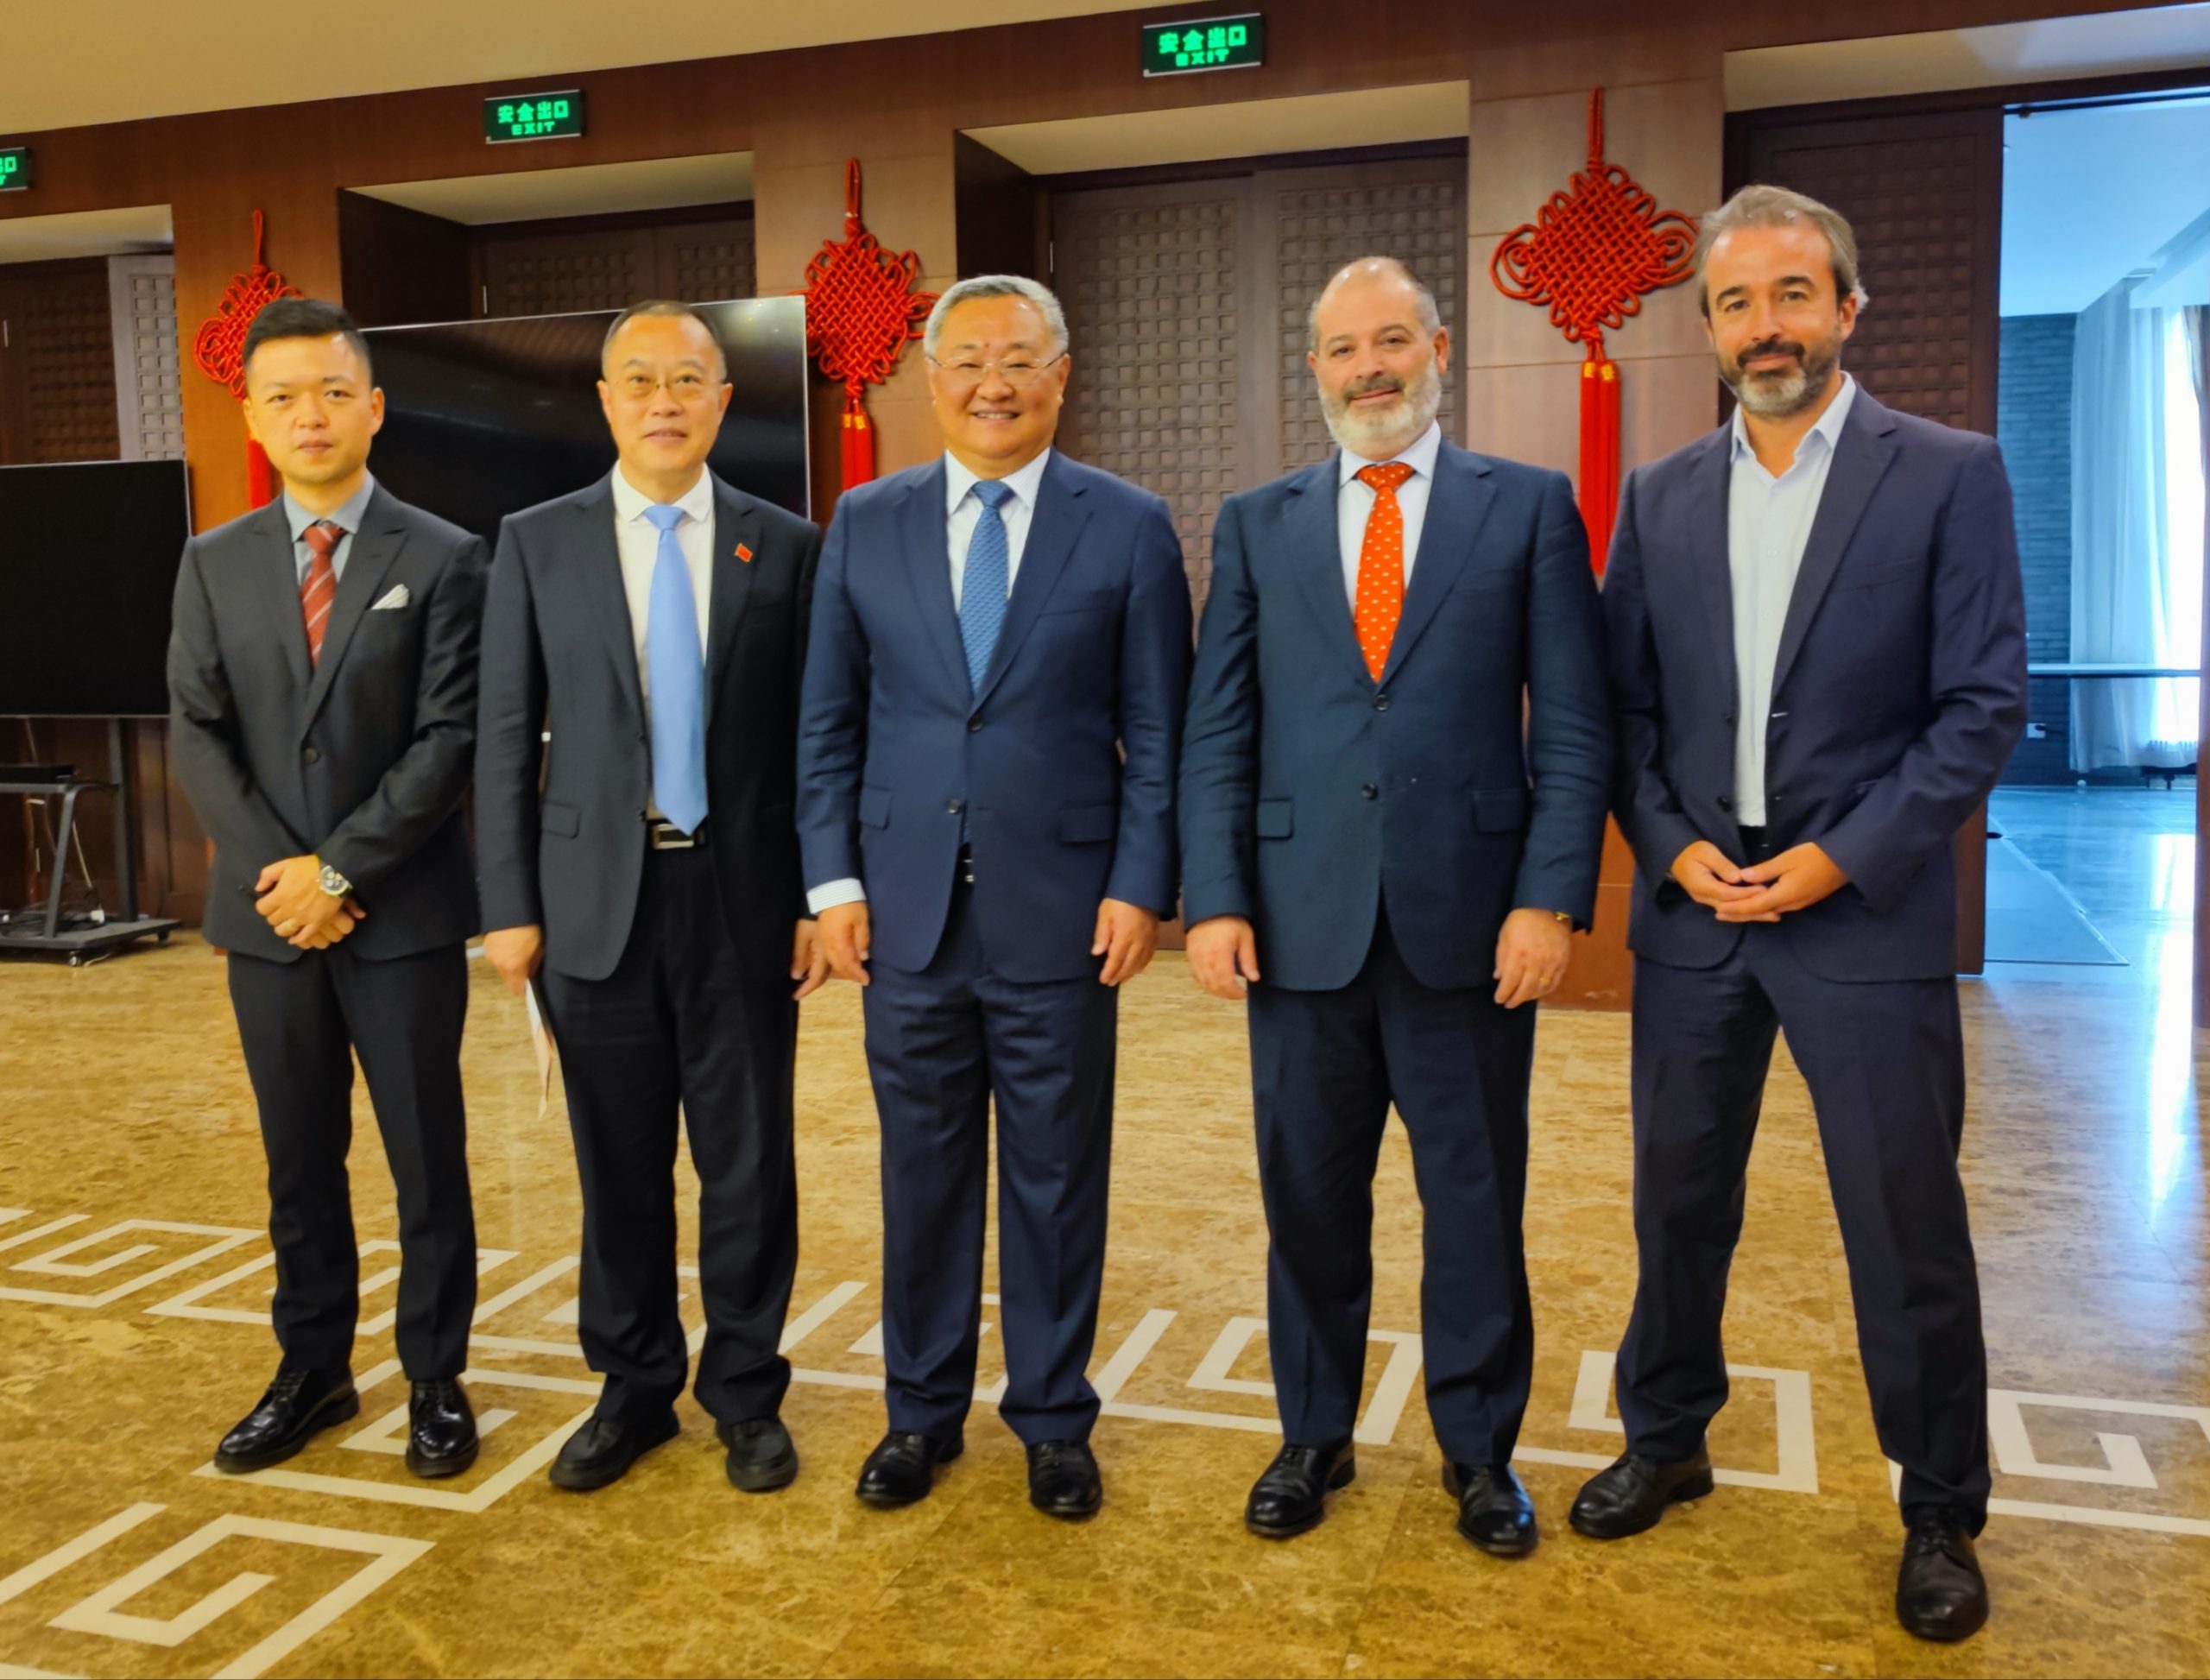 Sommet de l’éducation à Bruxelles: UNEATLANTICO renforce ses liens avec la Chine